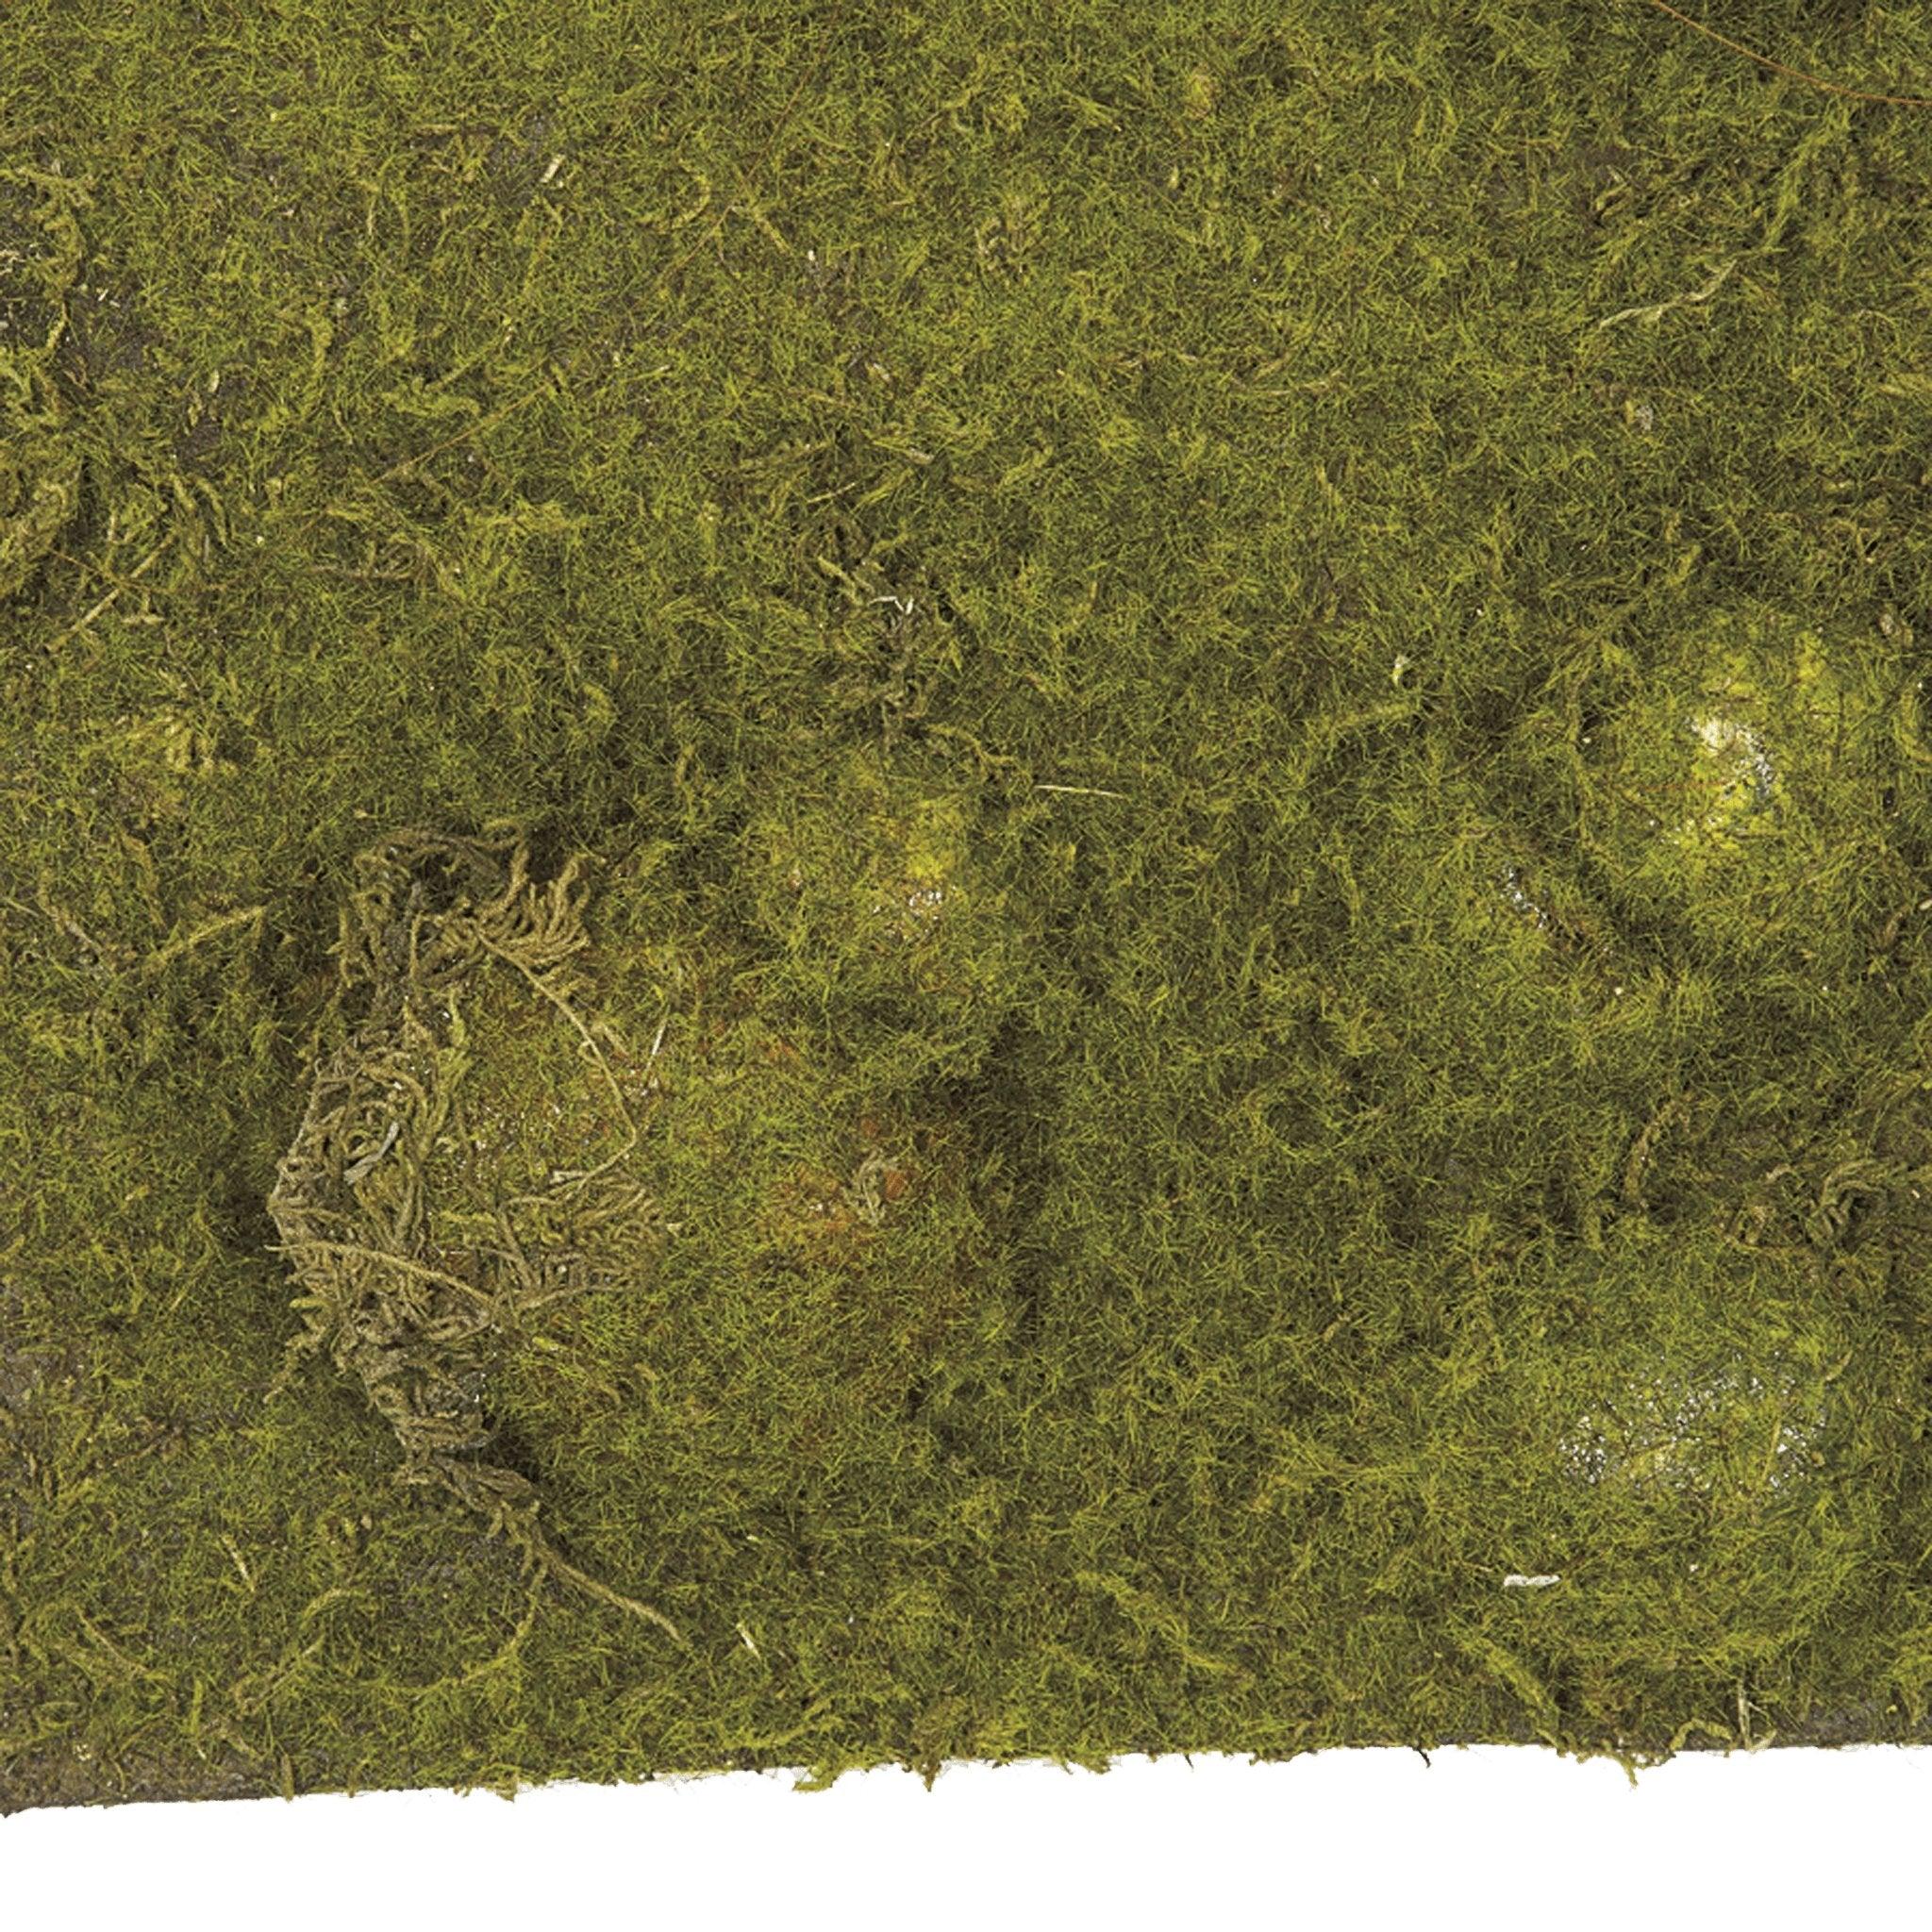 Moss Mat (Thick Green/Brown)